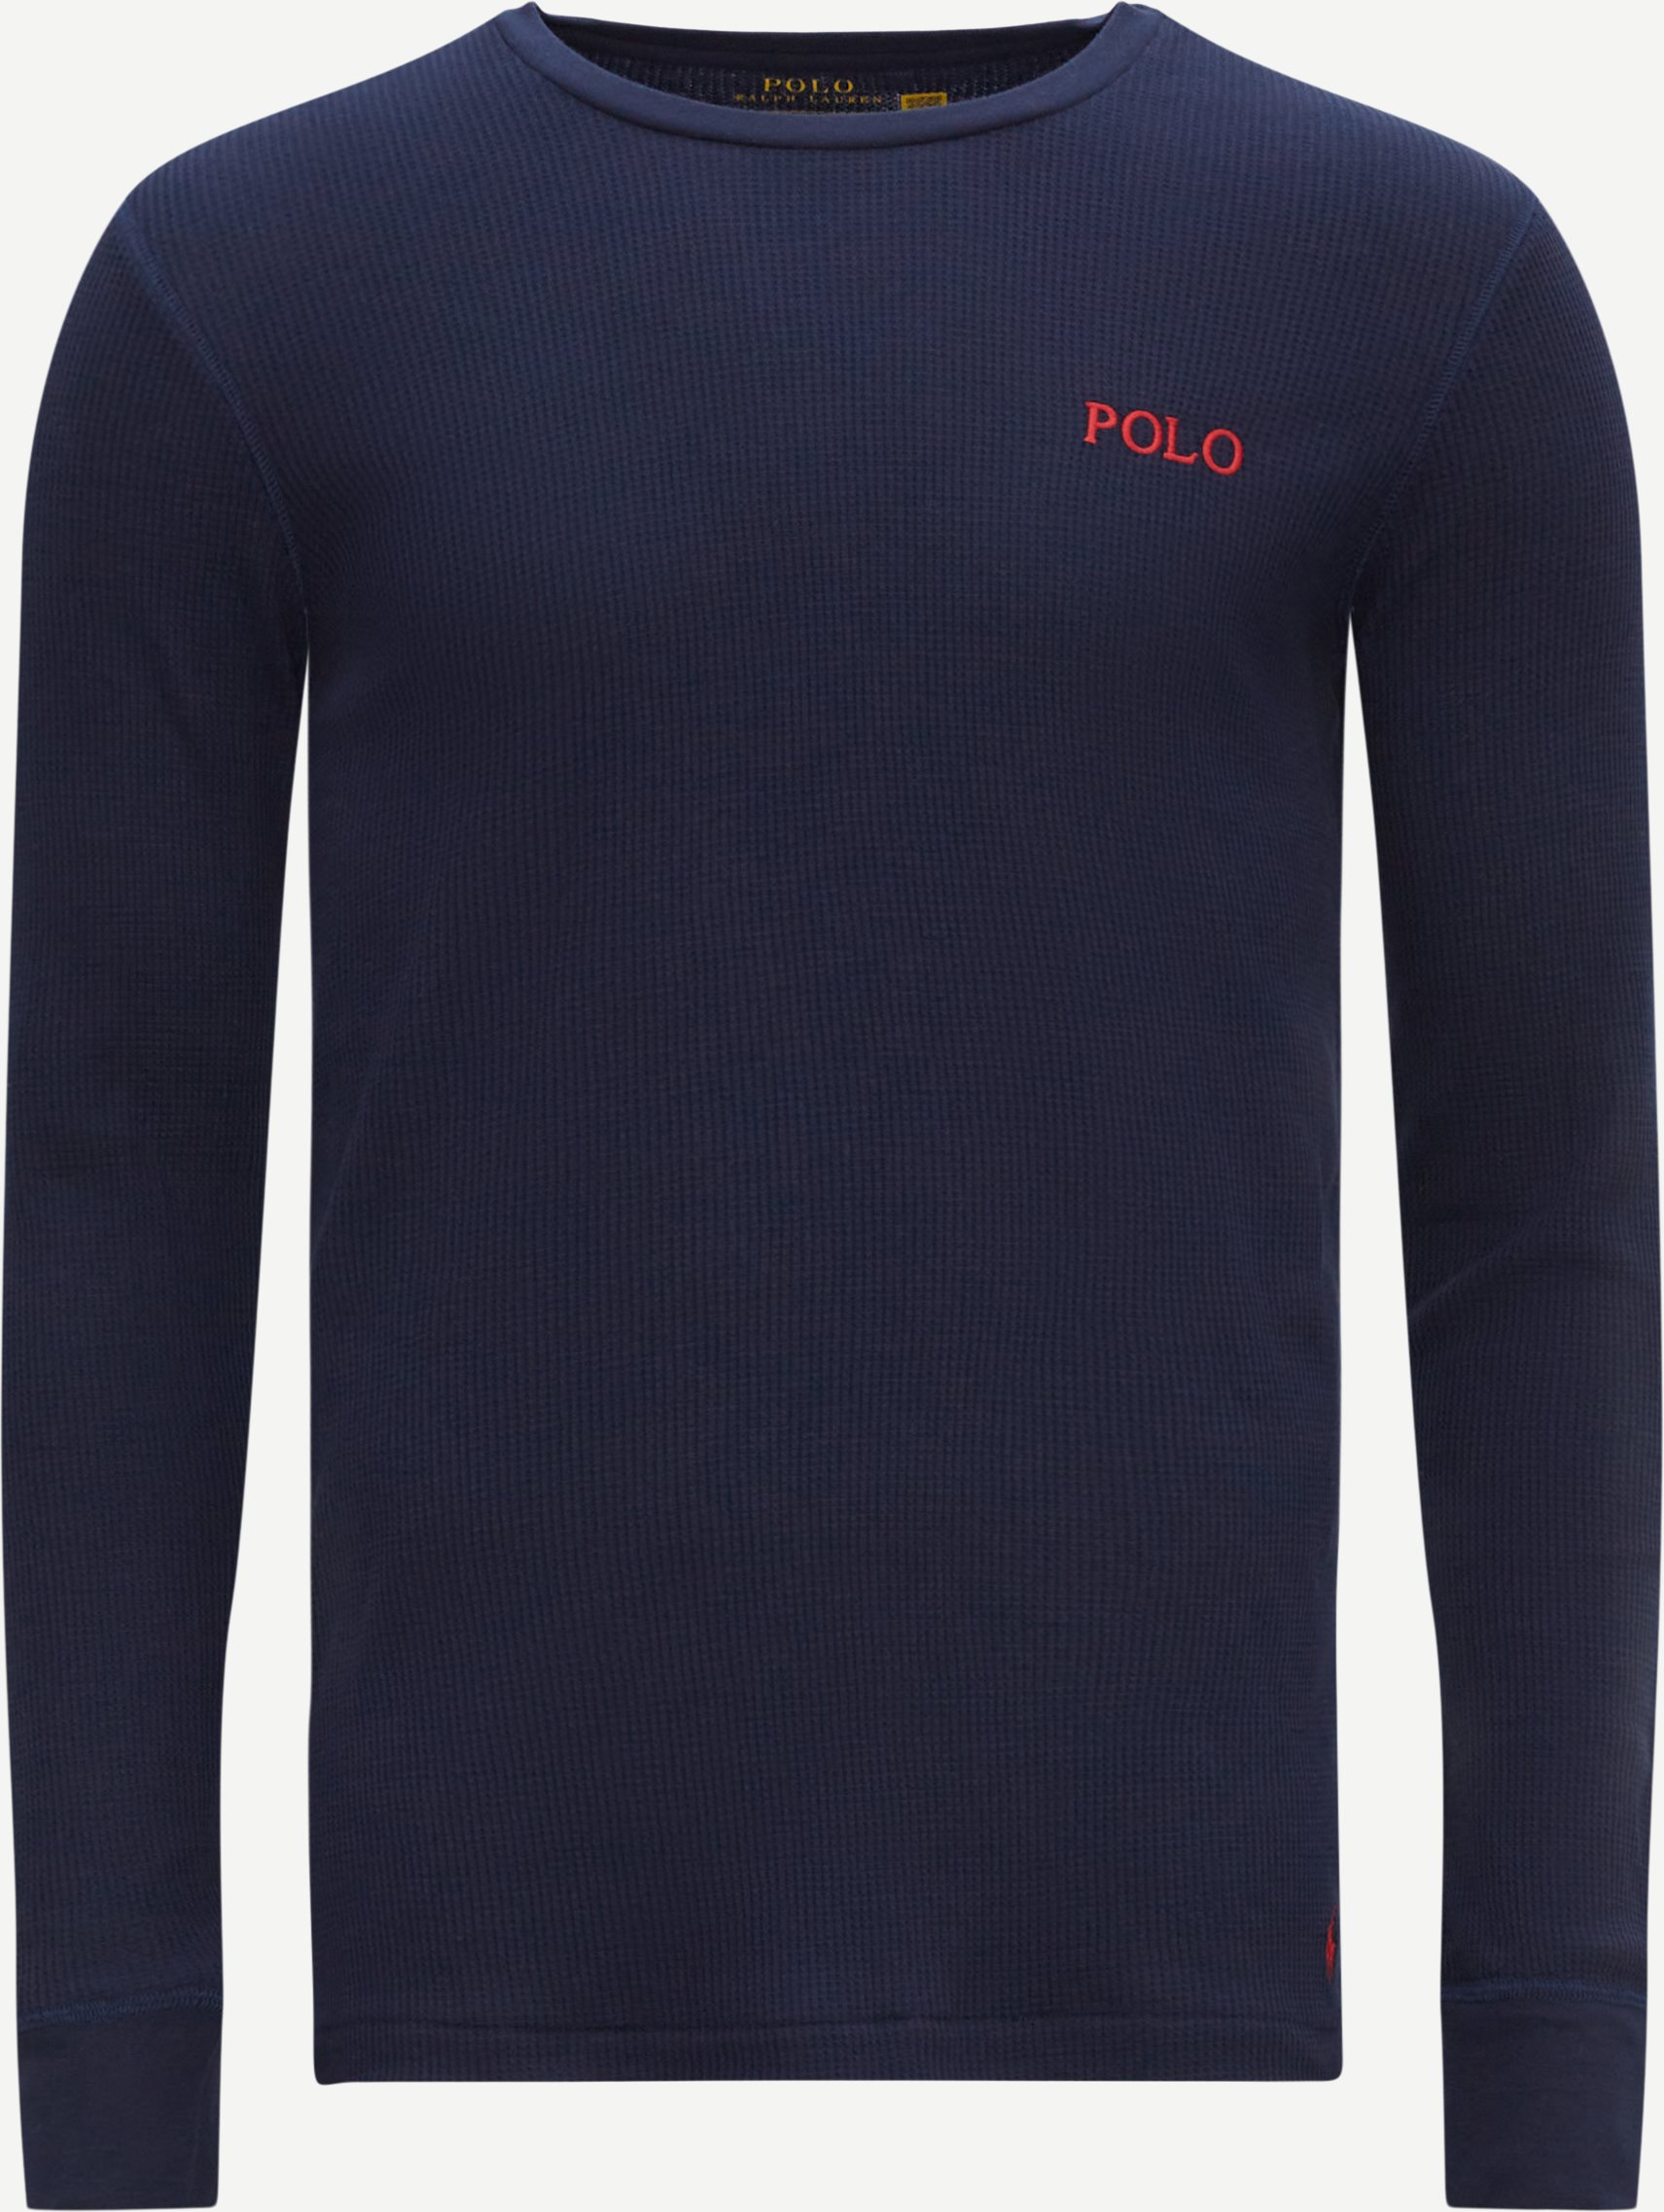 Polo Ralph Lauren T-shirts 714899615 Blå